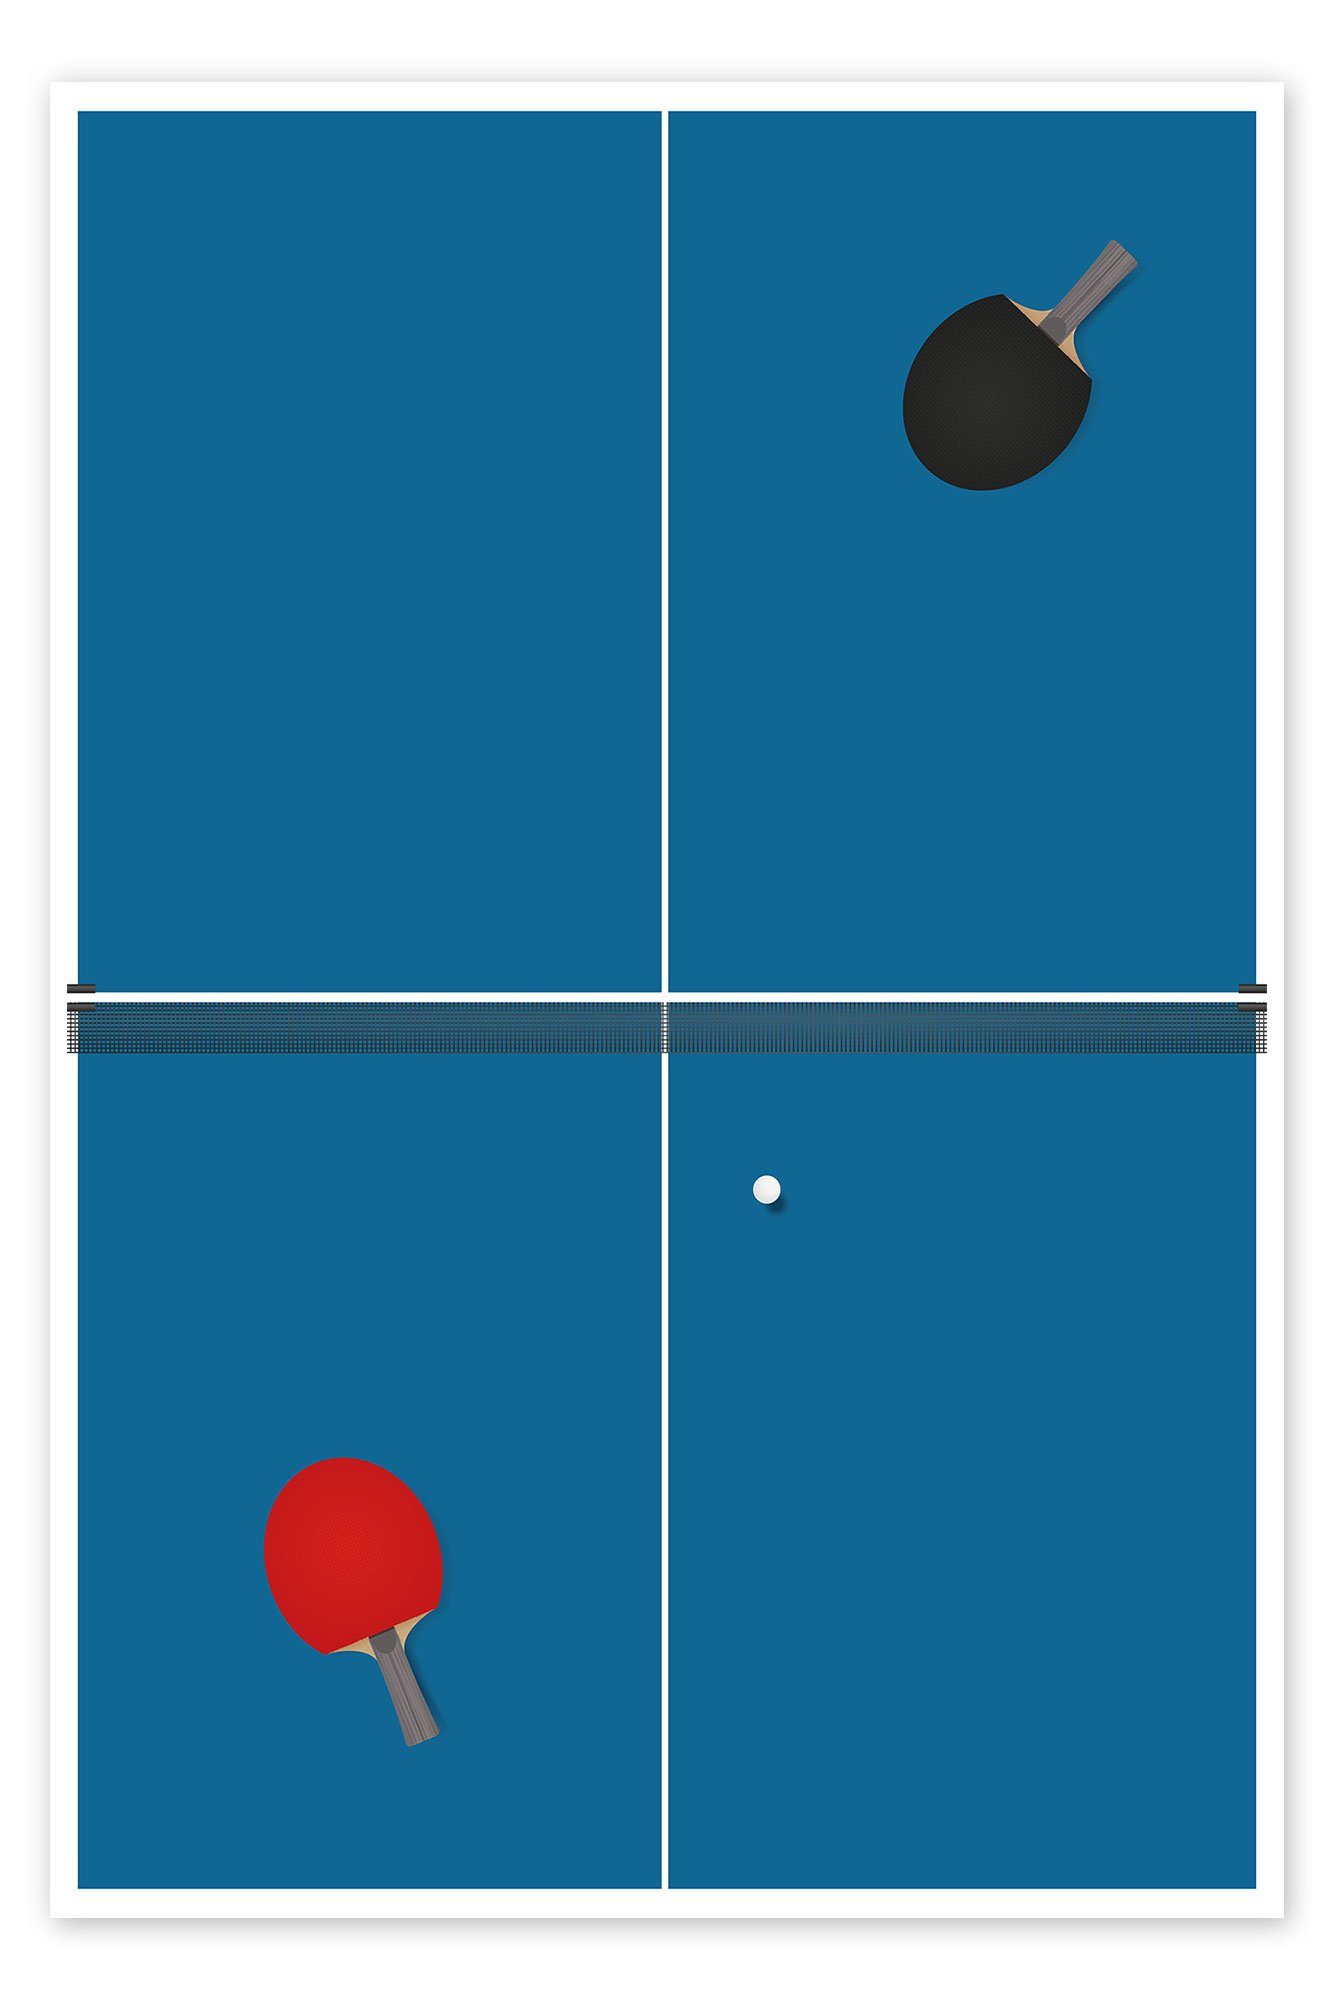 Posterlounge Poster Editors Choice, Tischtennis Match, Jungenzimmer Illustration